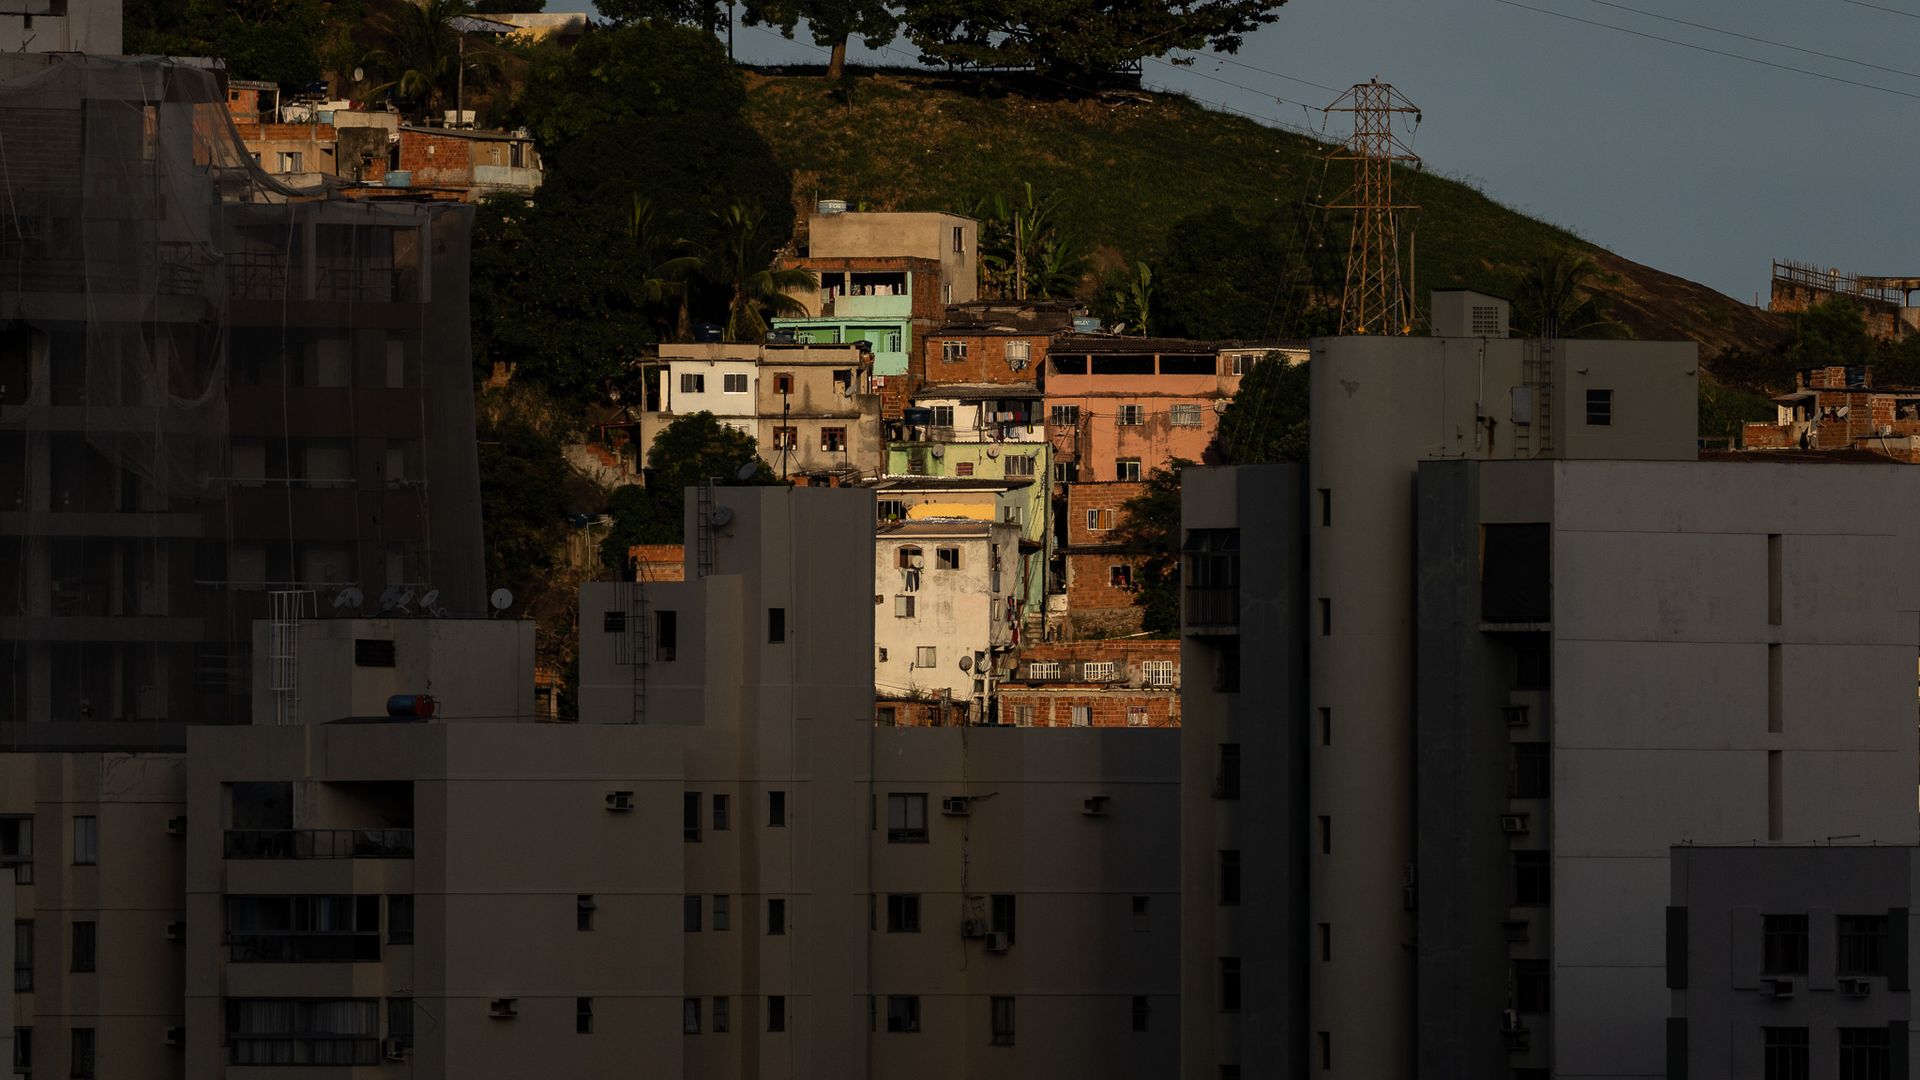 Ensaio fotográfico retrata as diferentes fromas de habitação na cidade de Vitória